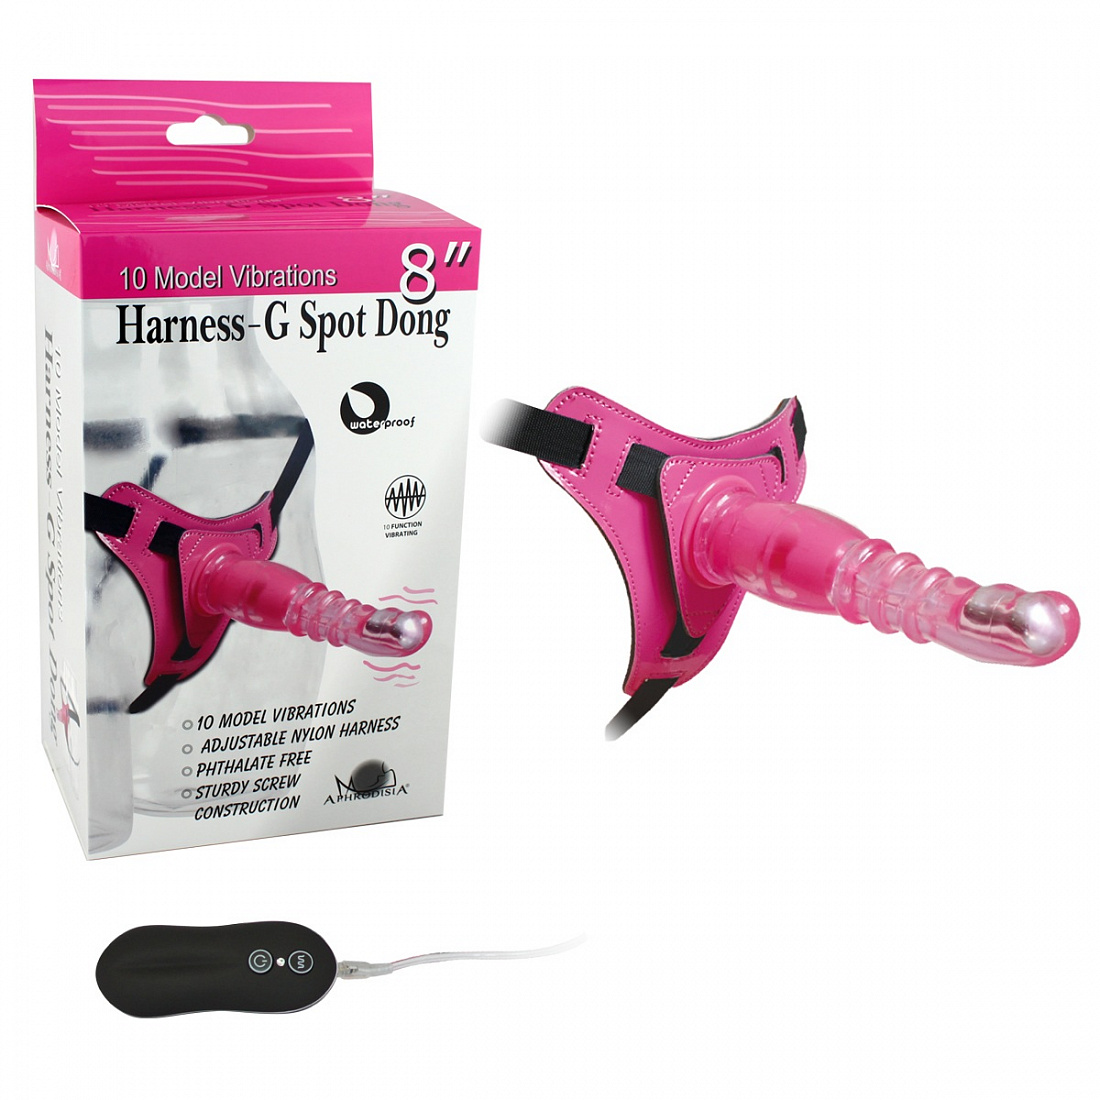 Розовый страпон на трусиках с вибрацией 10Mode Vibrations Harness-G spot Dong - 18,7 см. Howells 92003pink - цена 